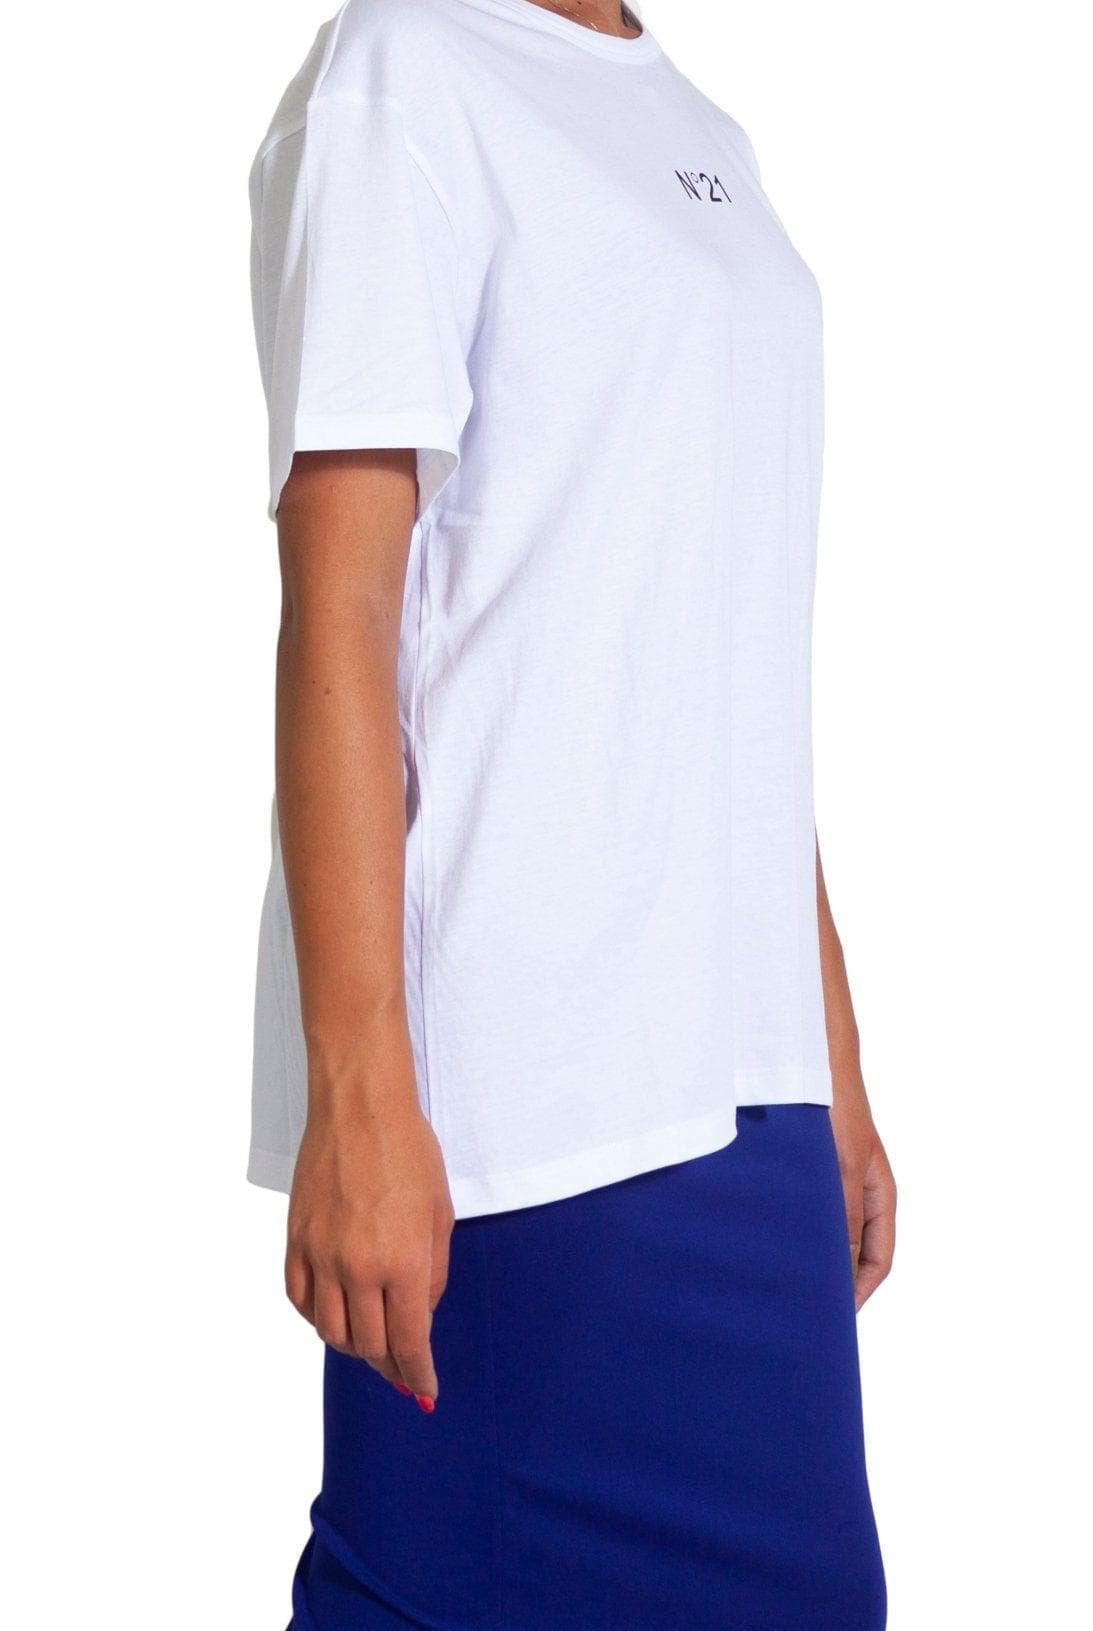 T-Shirt bianca con logo nero- N°21 -Giorgioquinto